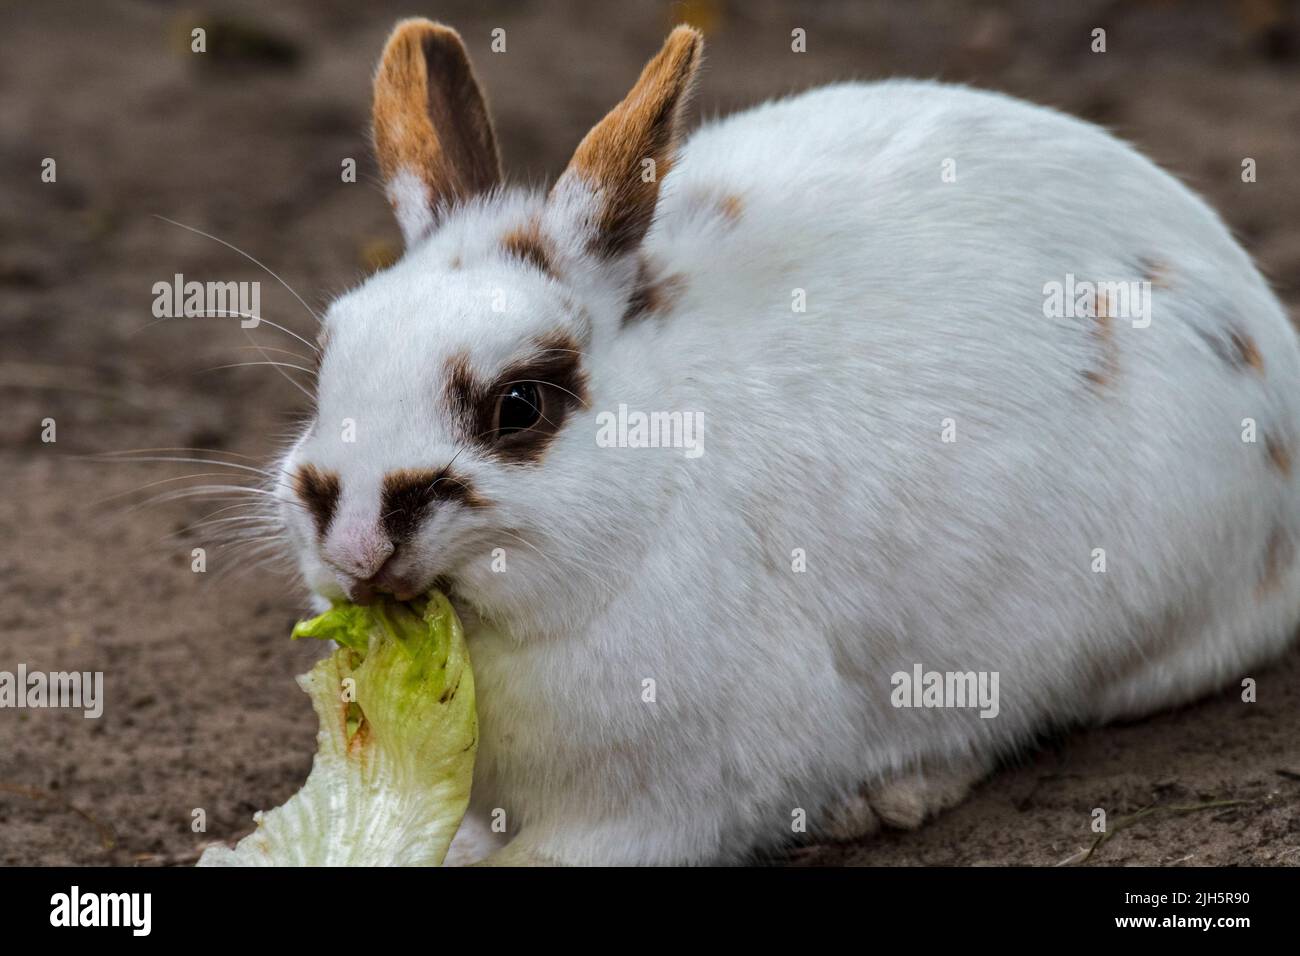 Primer plano de conejo enano blanco doméstico / conejo mascota (Oryctolagus cuniculus domesticus) comiendo hoja de lechuga en el zoológico de mascotas / granja infantil Foto de stock